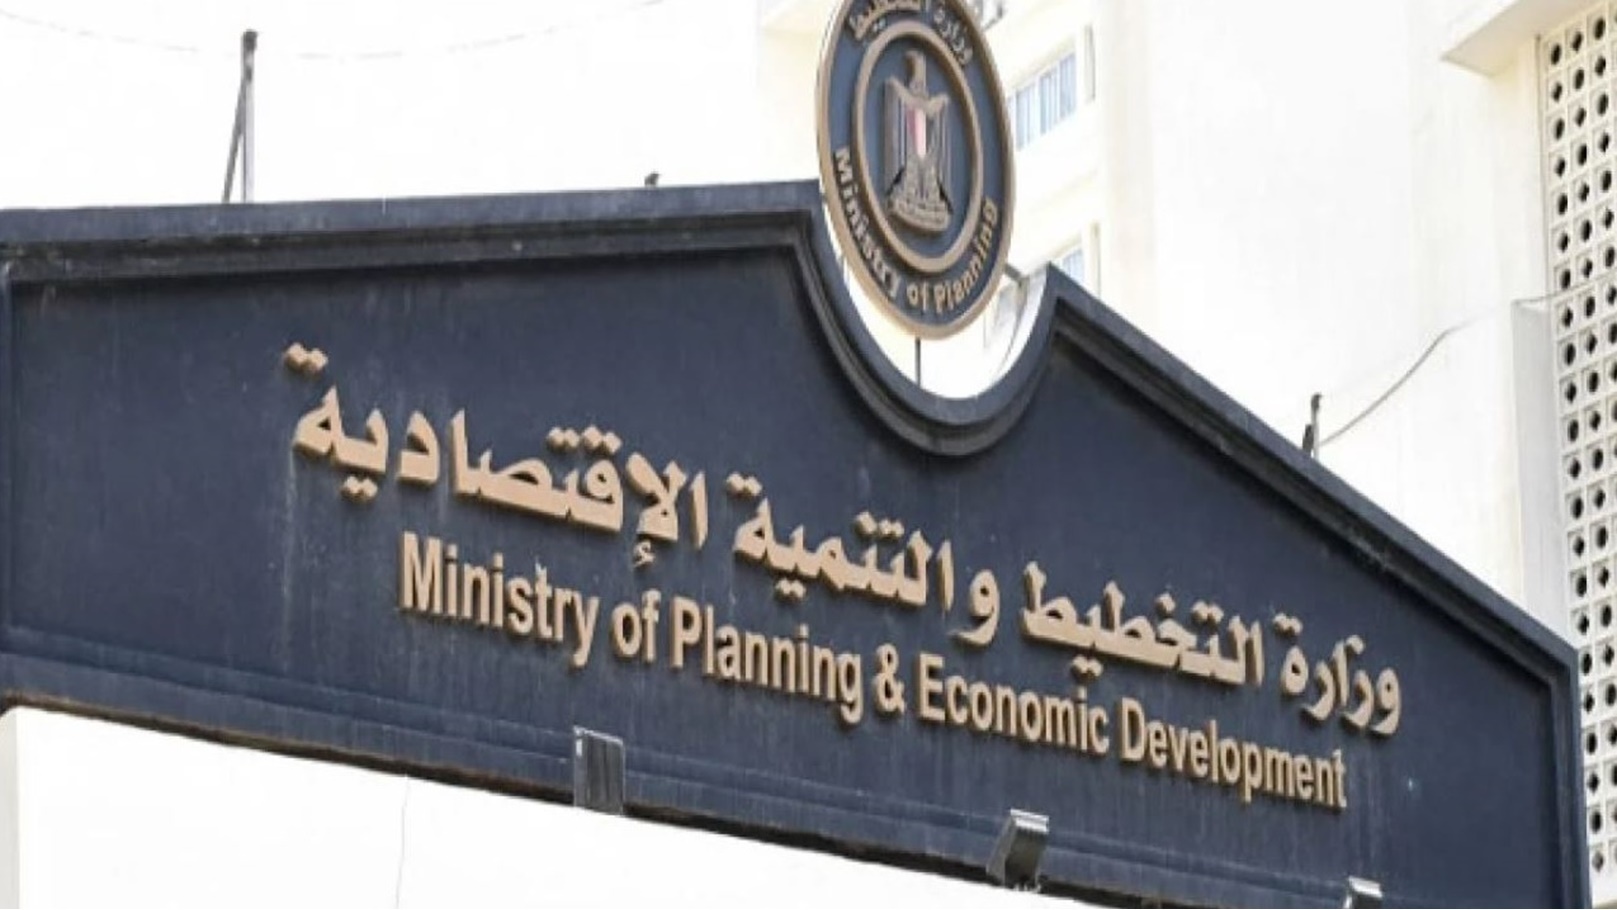 وزارة التخطيط